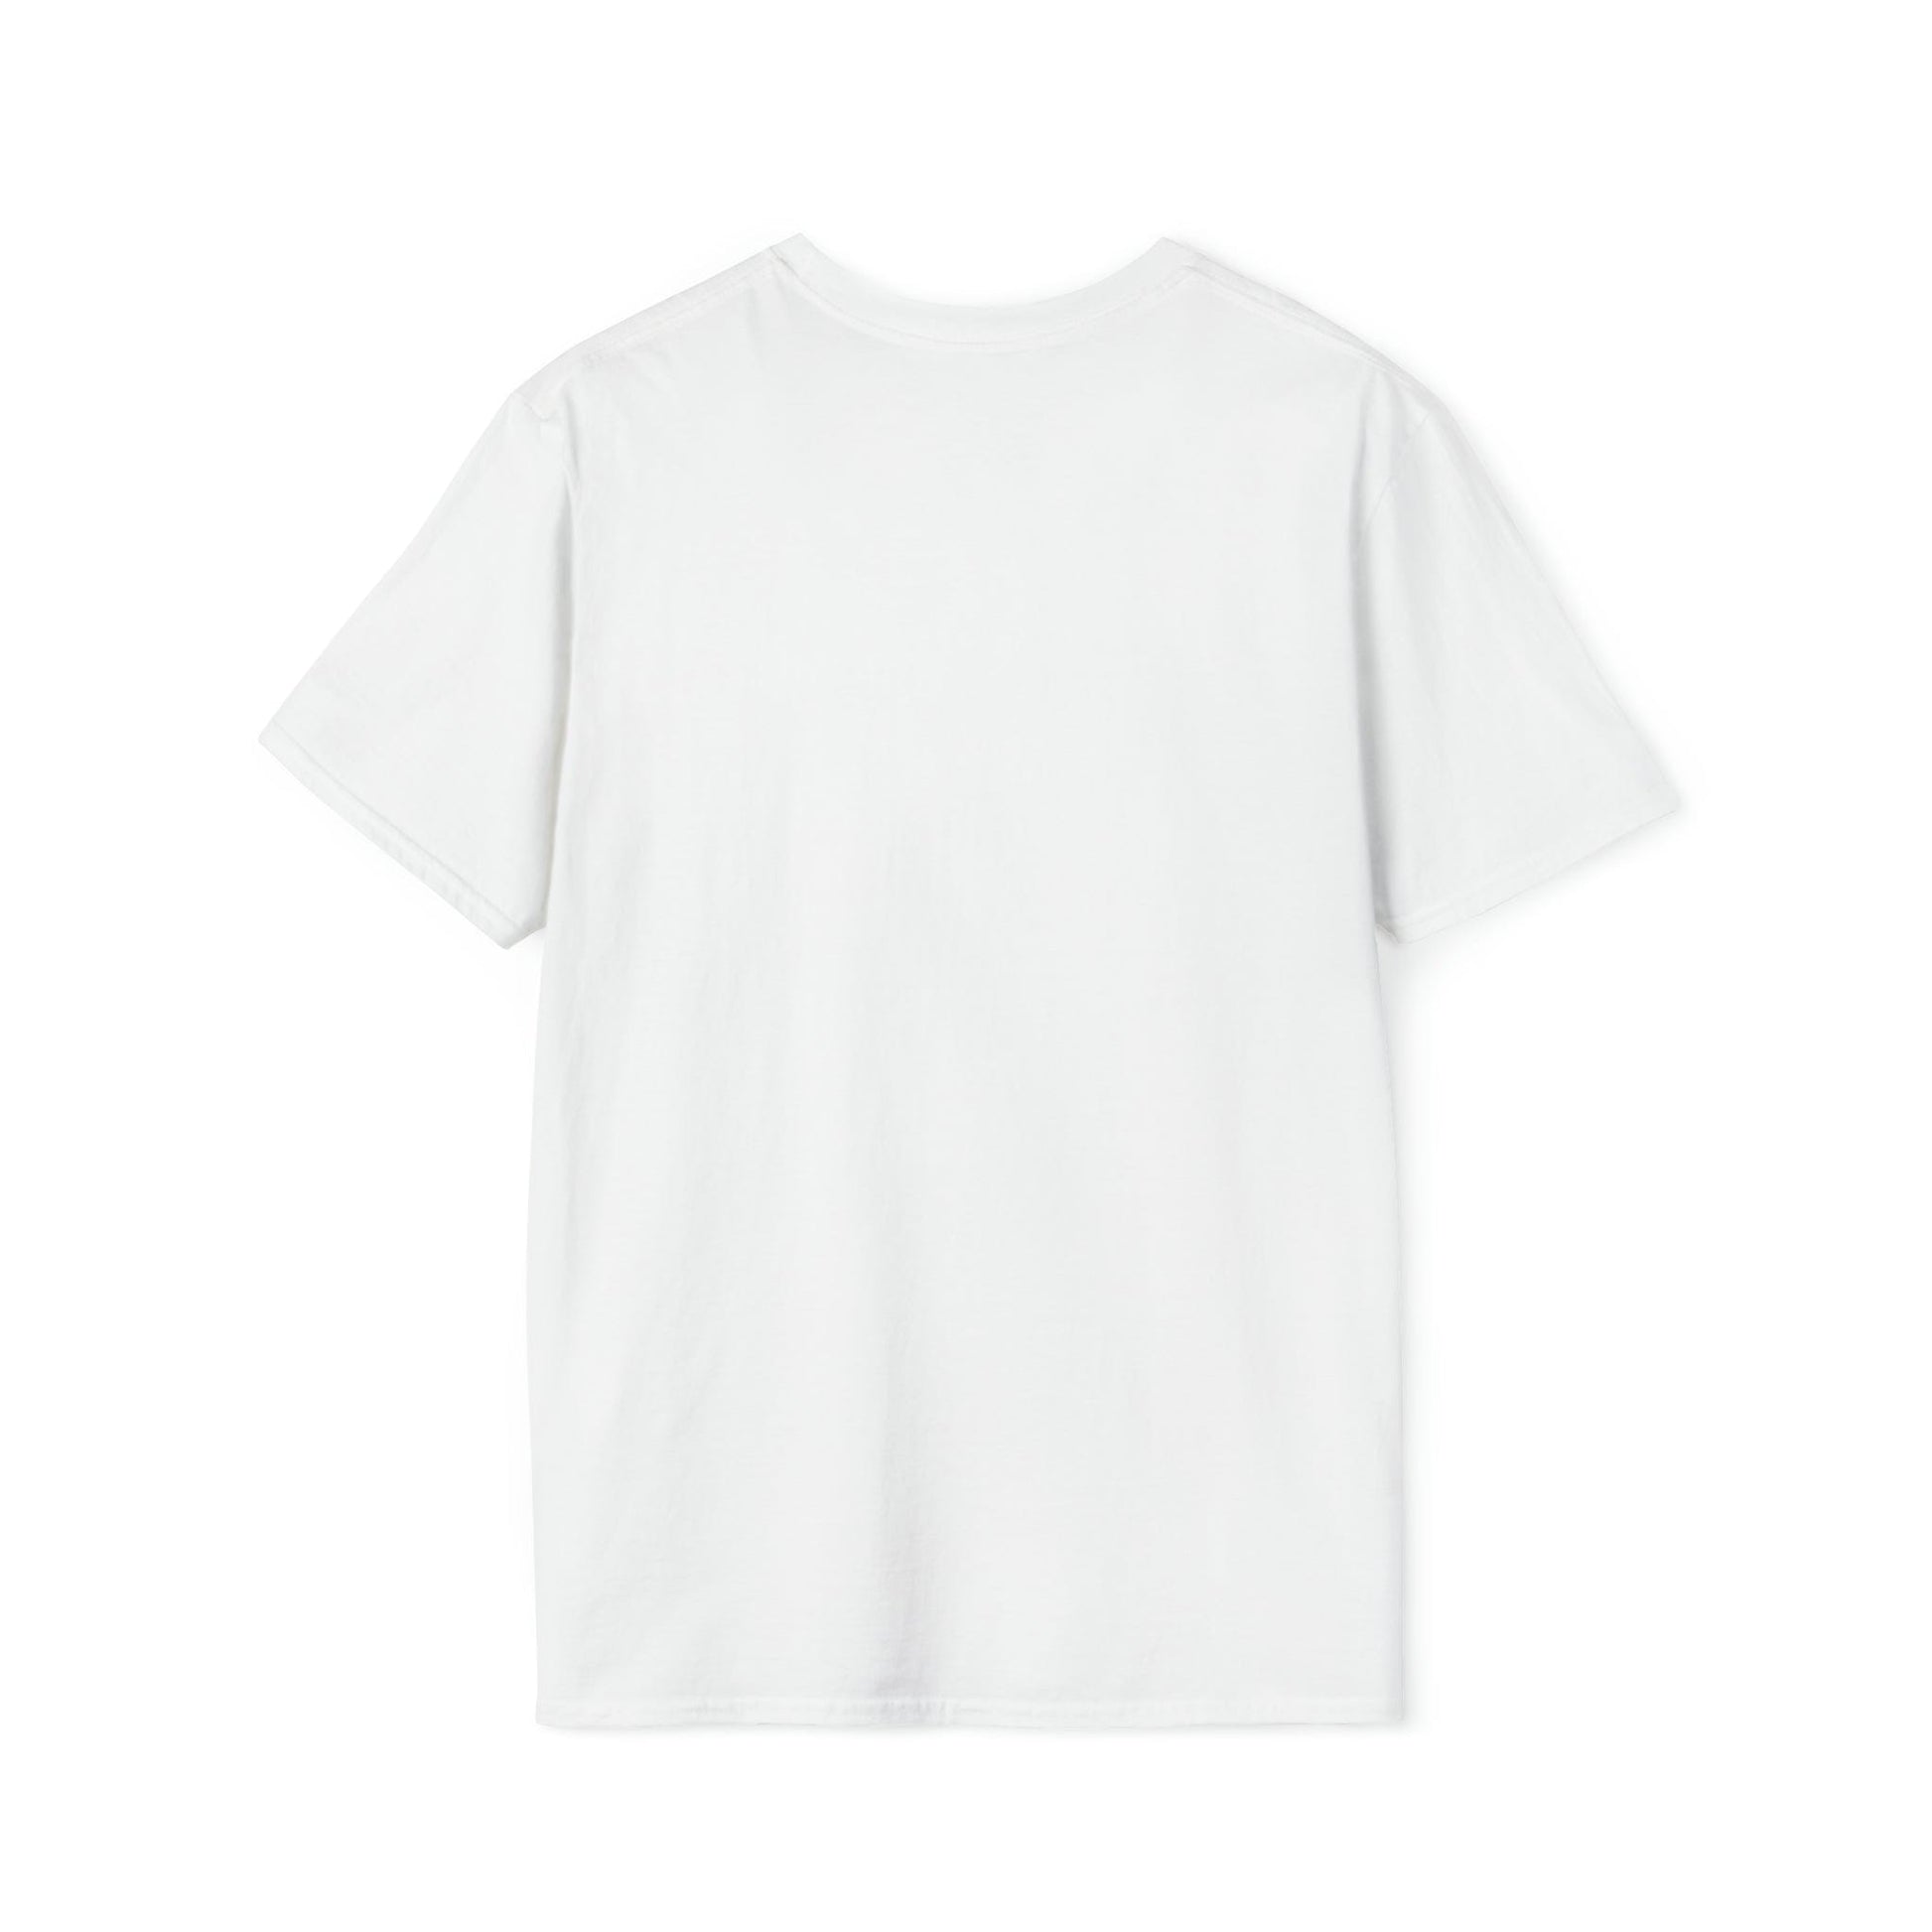 T-Shirt LockedBoy Sports Club - Chastity Tshirt Kettlebell LEATHERDADDY BATOR